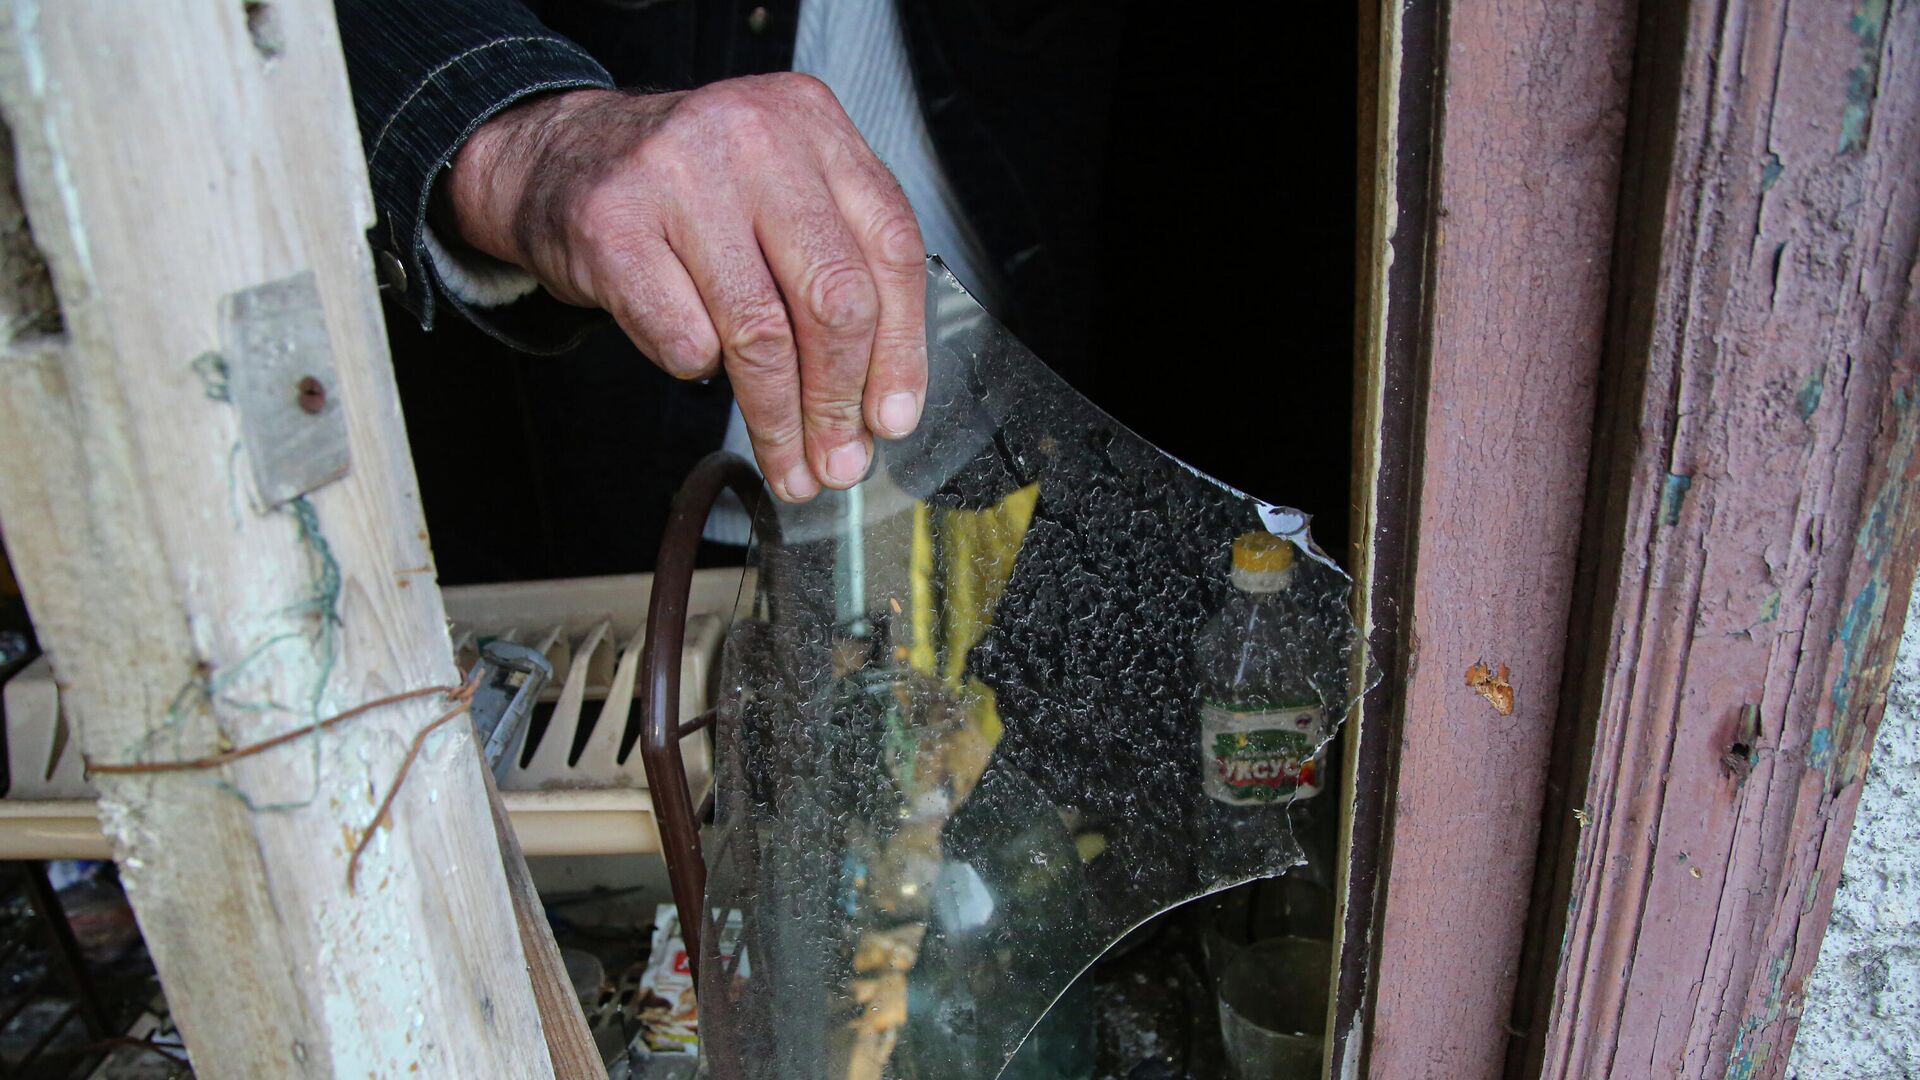 Местный житель из села Васильевка Донецкой области держит кусок разбитого стекла из разбитого окна жилого дома, пострадавшего в результате обстрела - РИА Новости, 1920, 12.04.2021